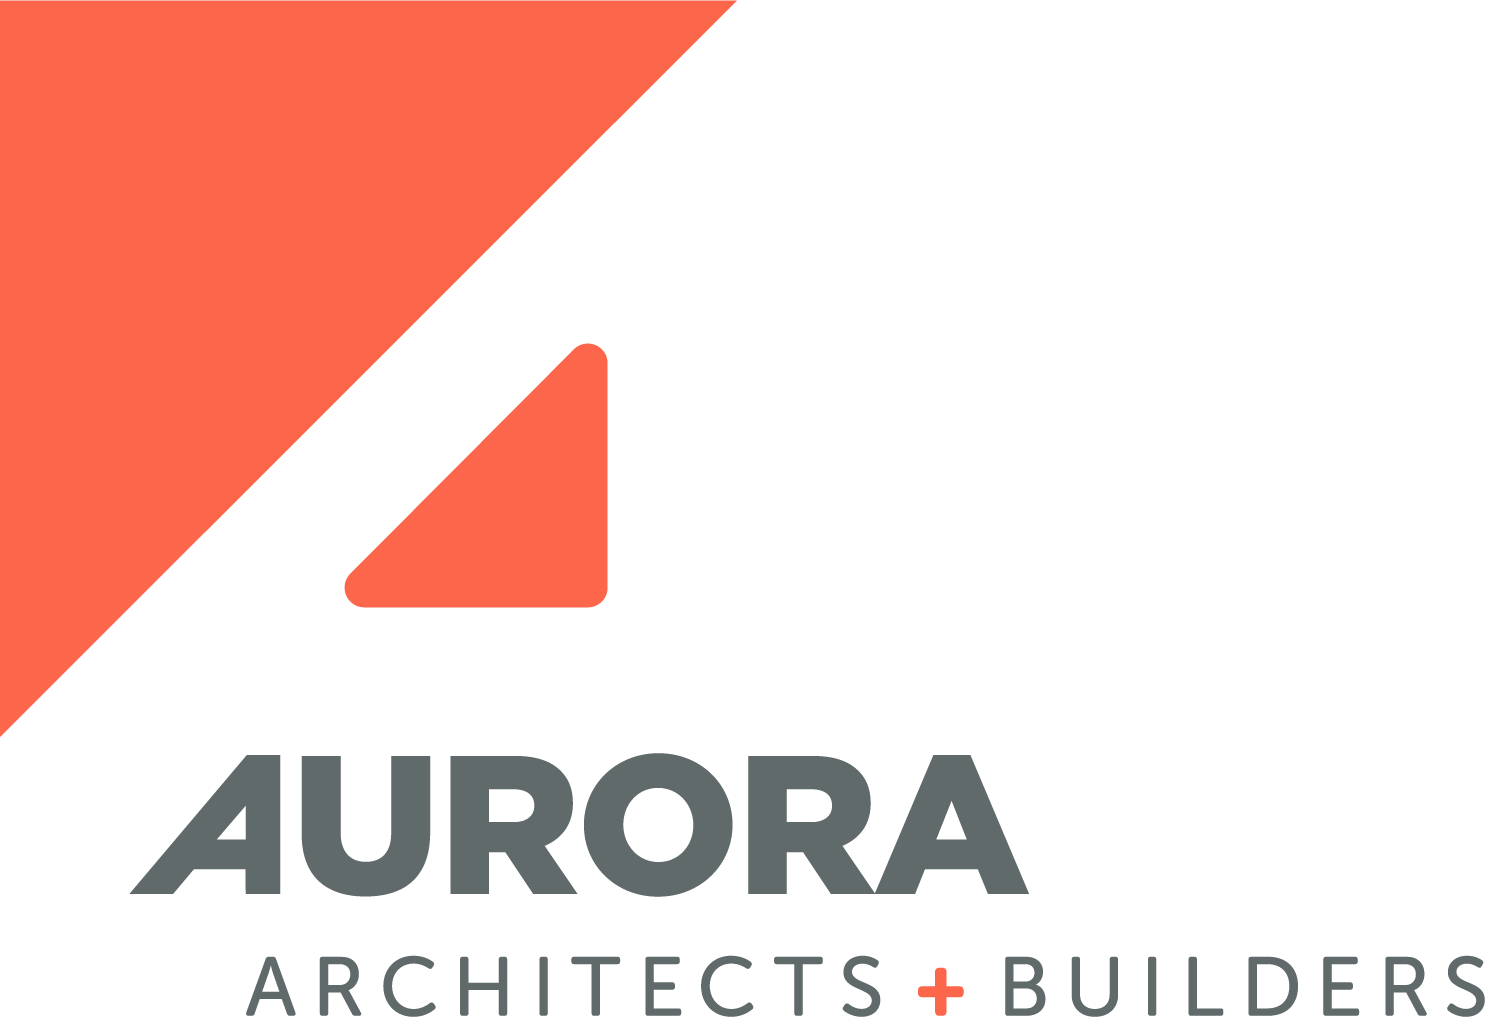 Aurora Architects + Builders